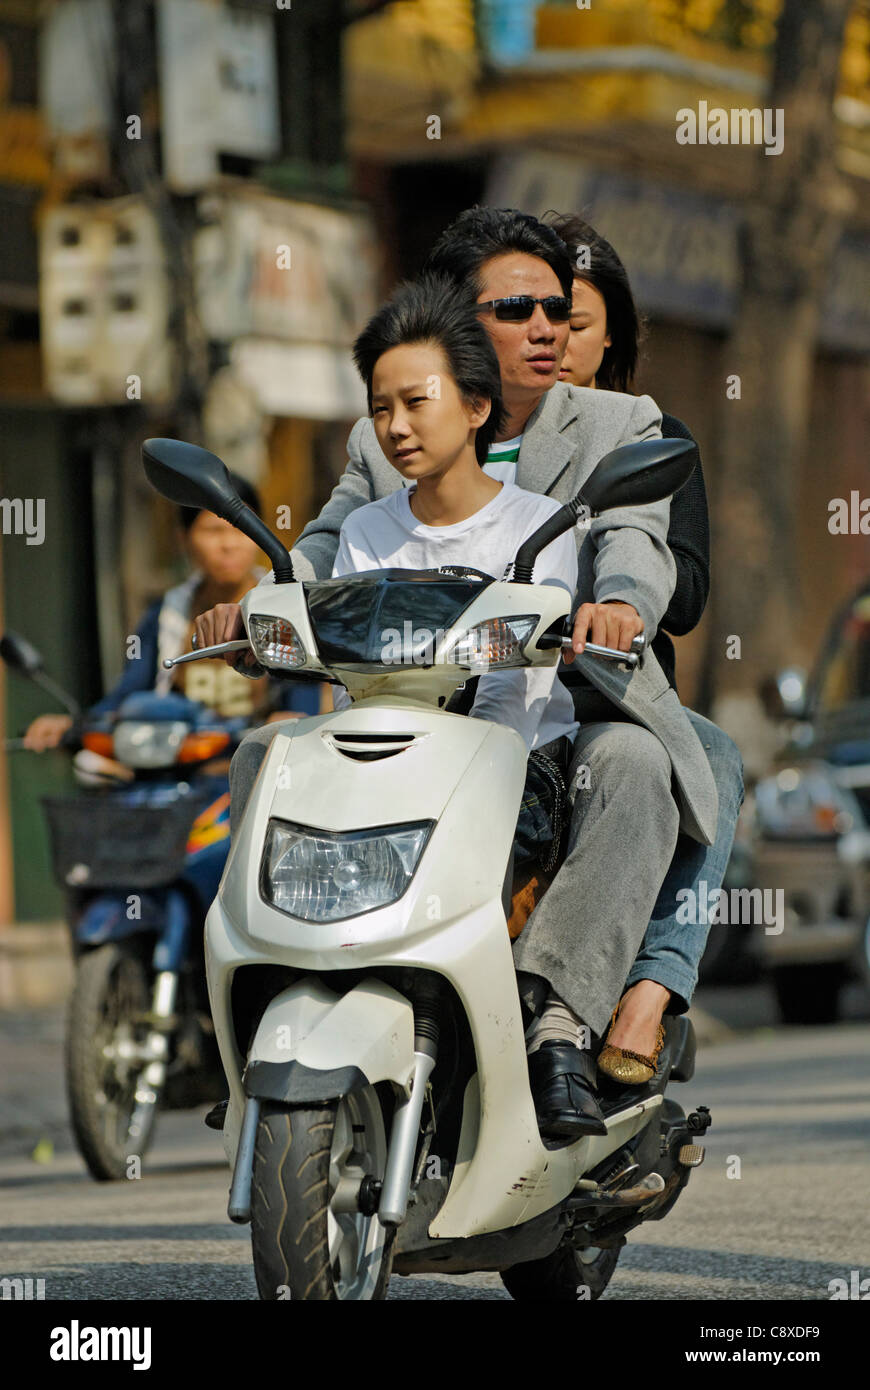 Asia, Vietnam, Hanoi. Hanoi old quarter. Vietnamese family riding on motorbike through Hanoi.... Stock Photo